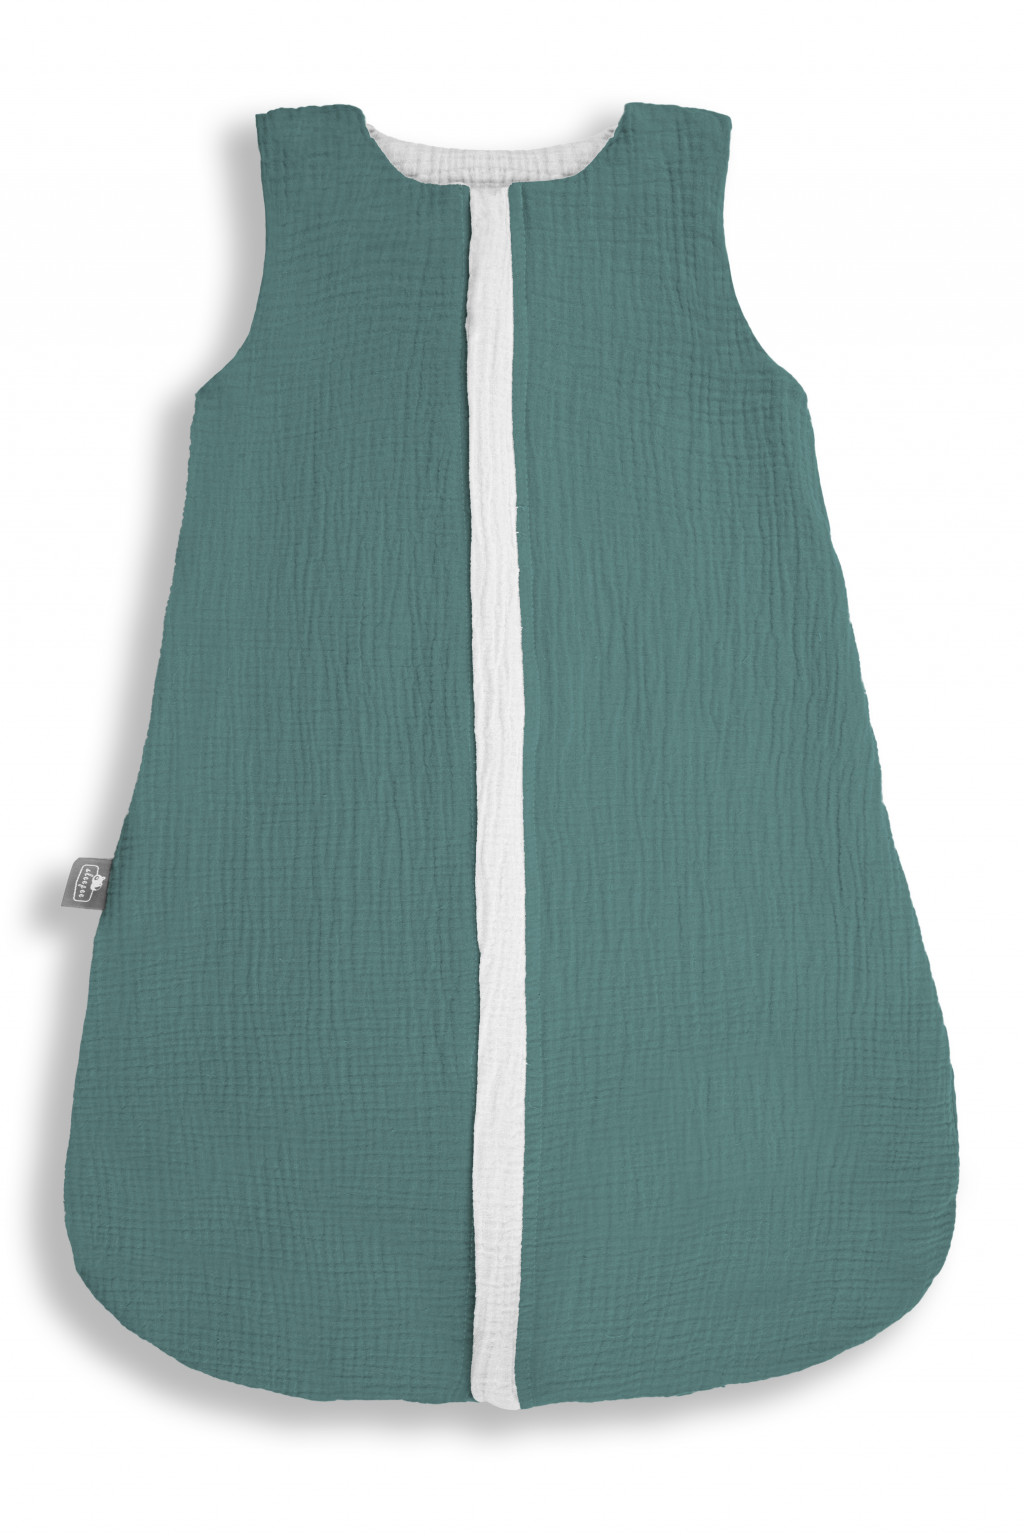 Sleepee Obojstranný ľahký mušelínový spací vak Ocean Green 0-4 mesiace S